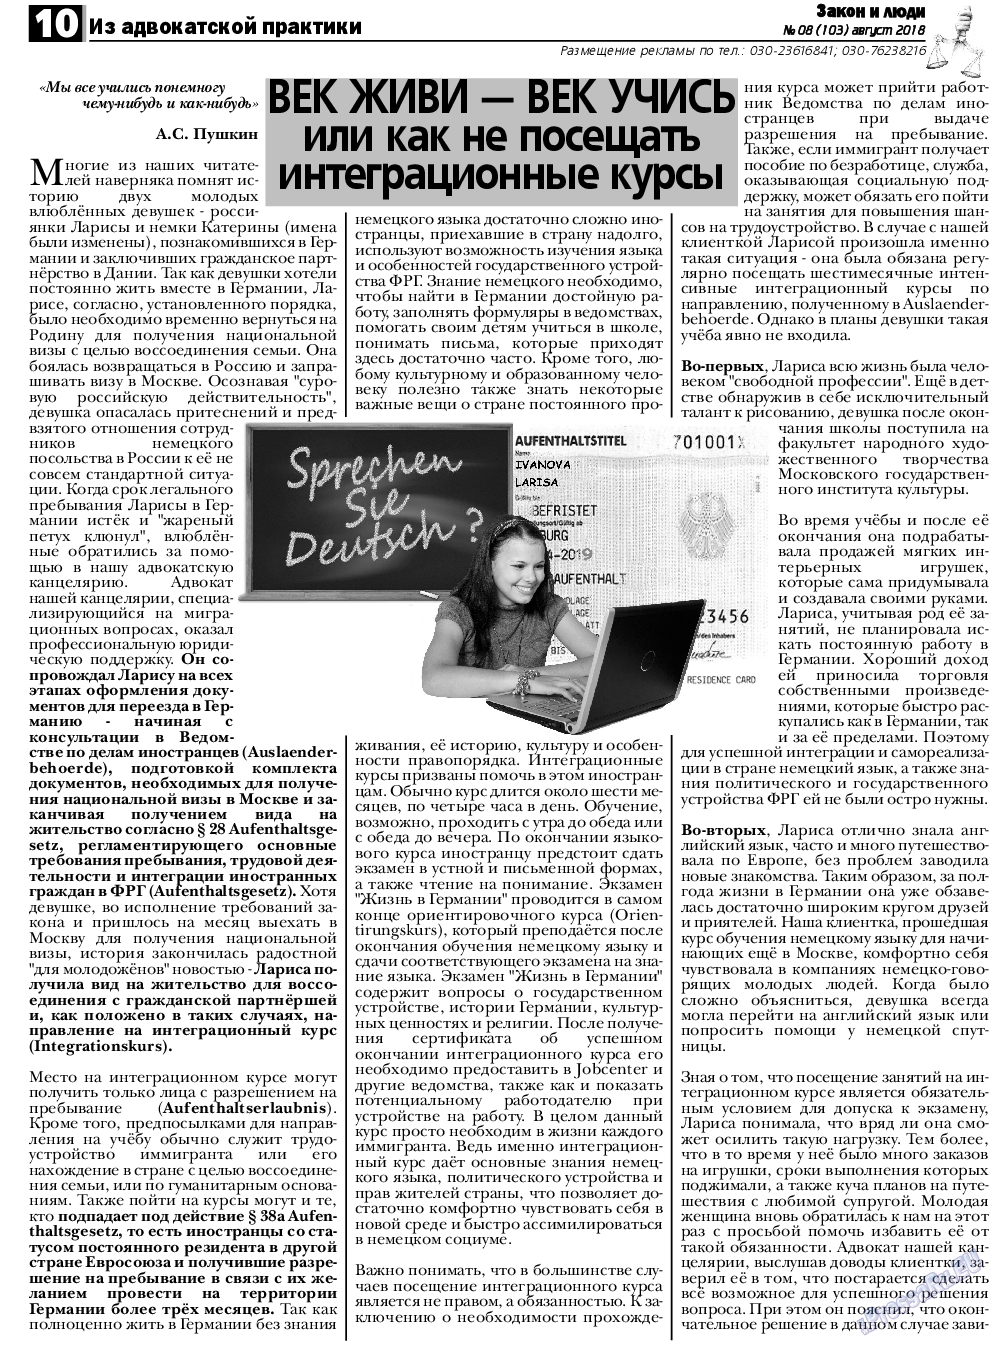 Закон и люди, газета. 2018 №8 стр.10